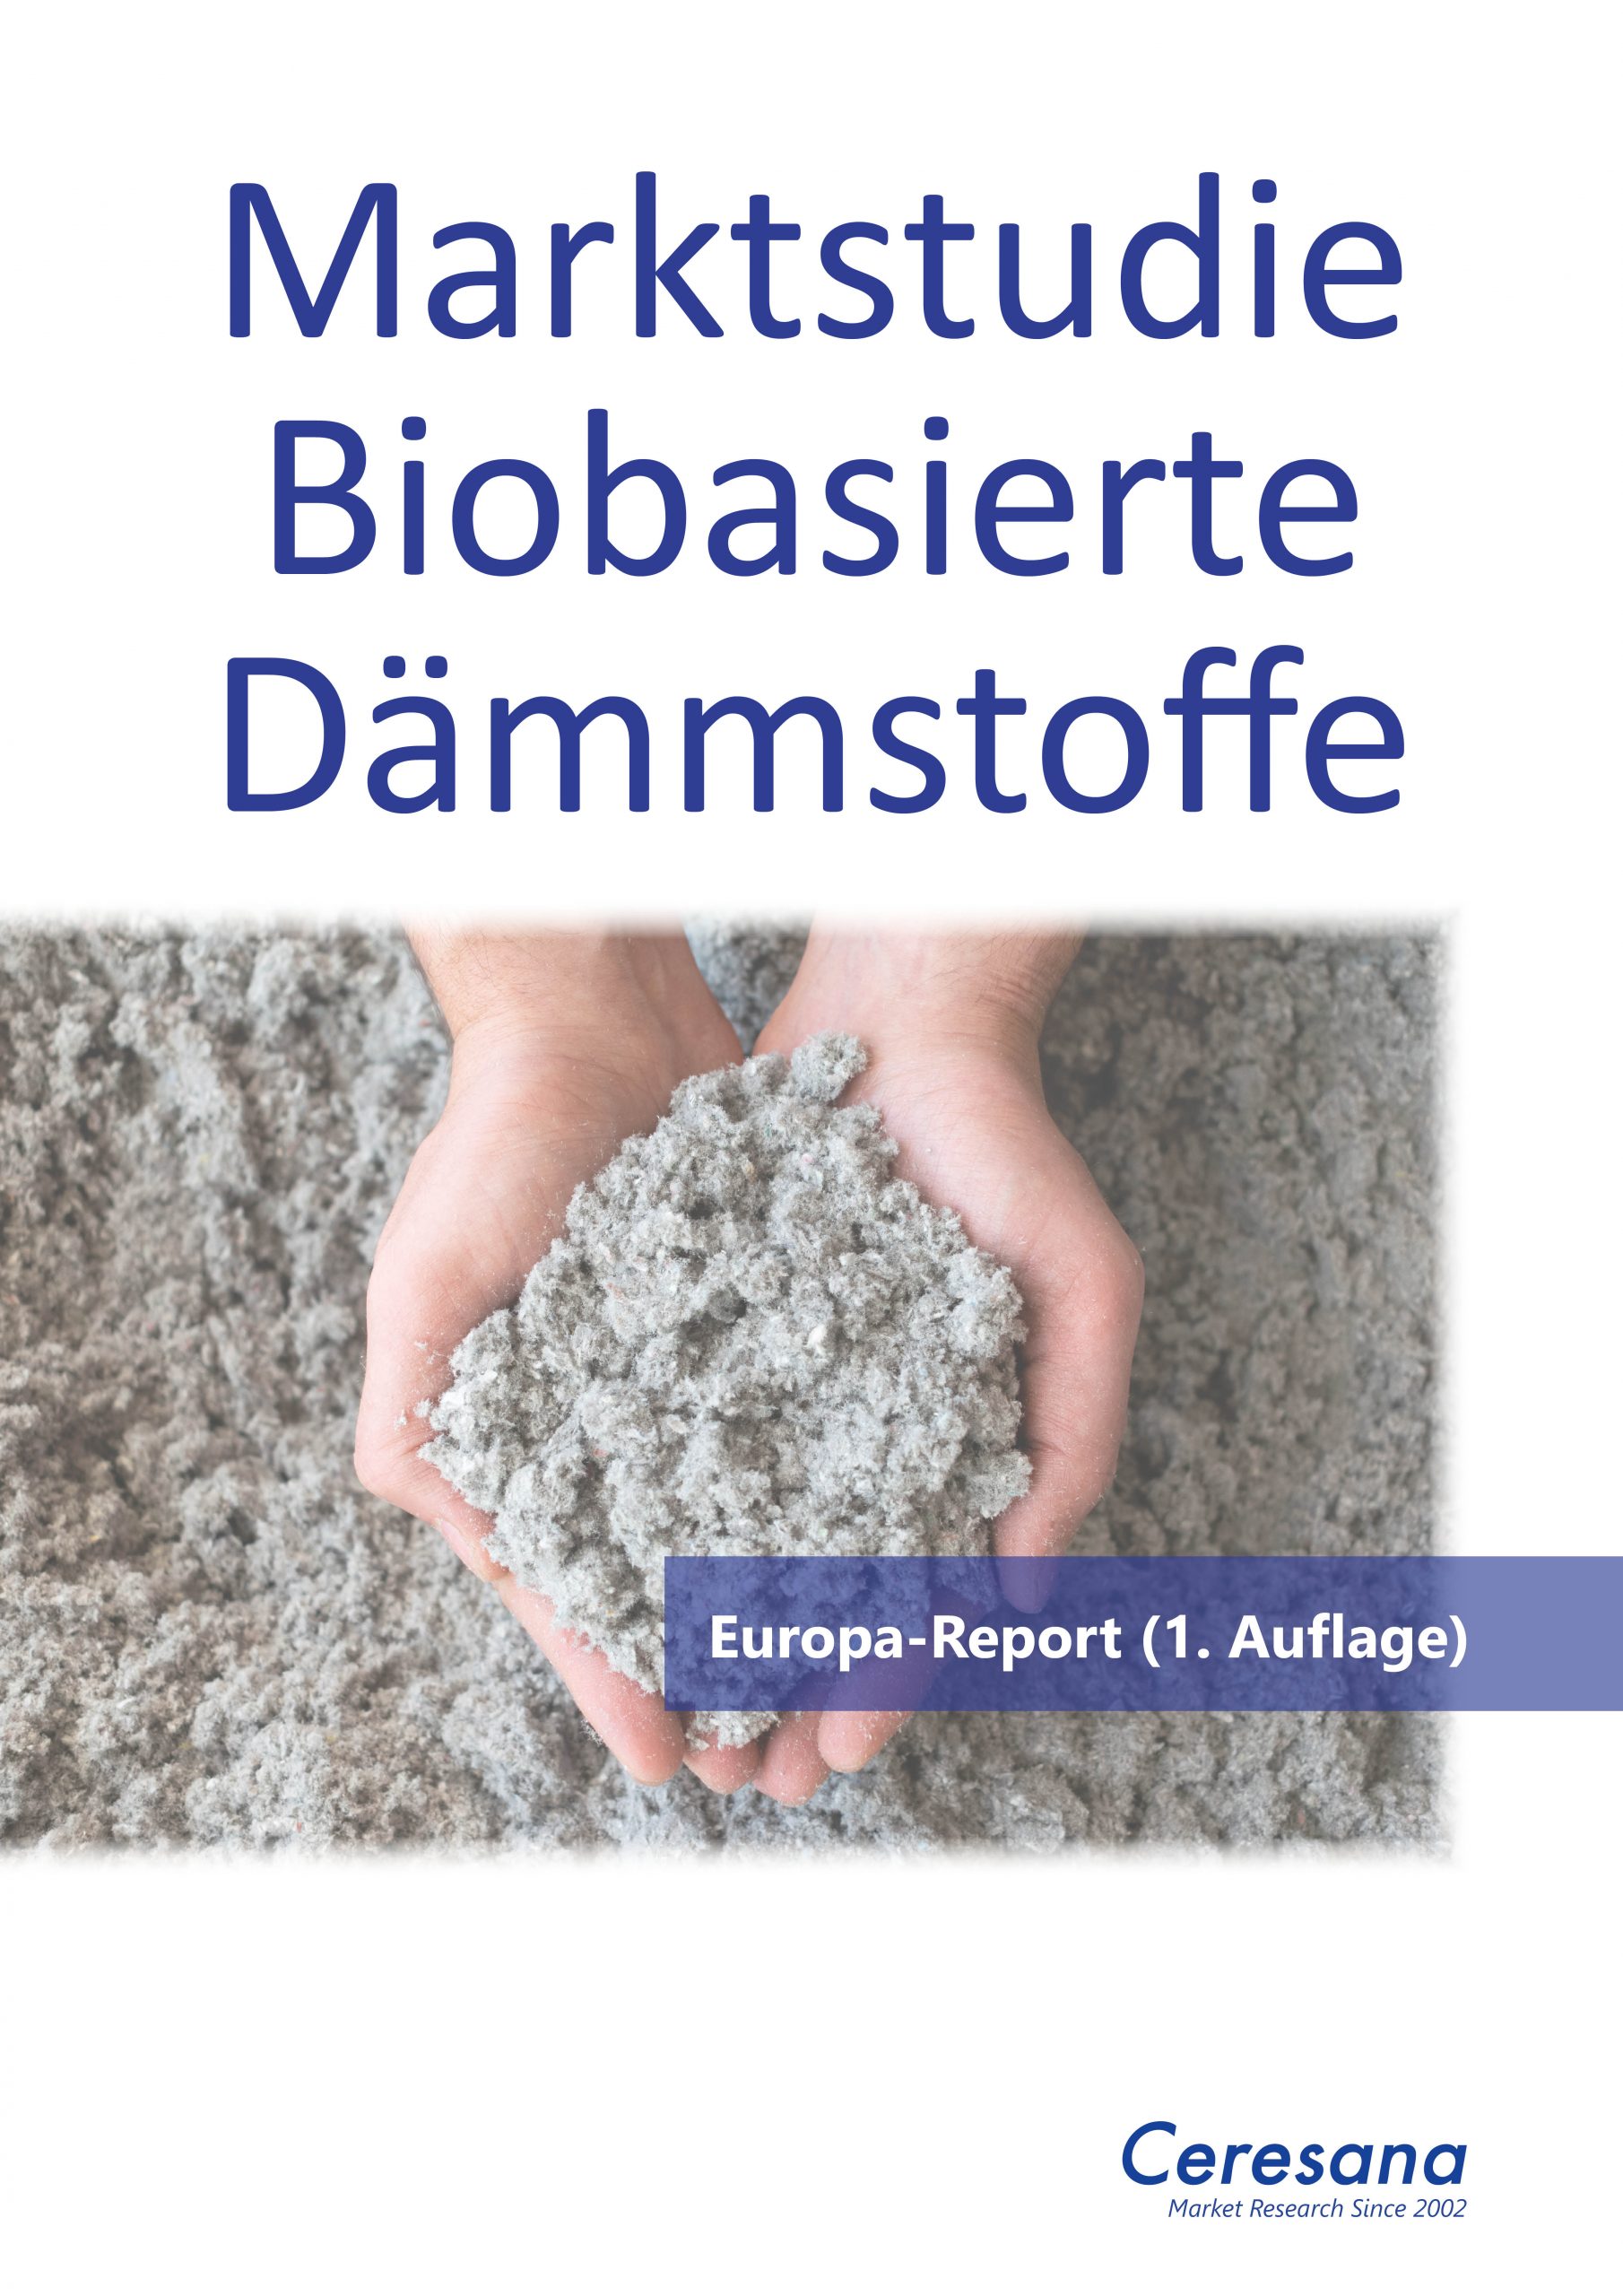 Deutsche-Politik-News.de | Marktstudie Biobasierte Dämmstoffe